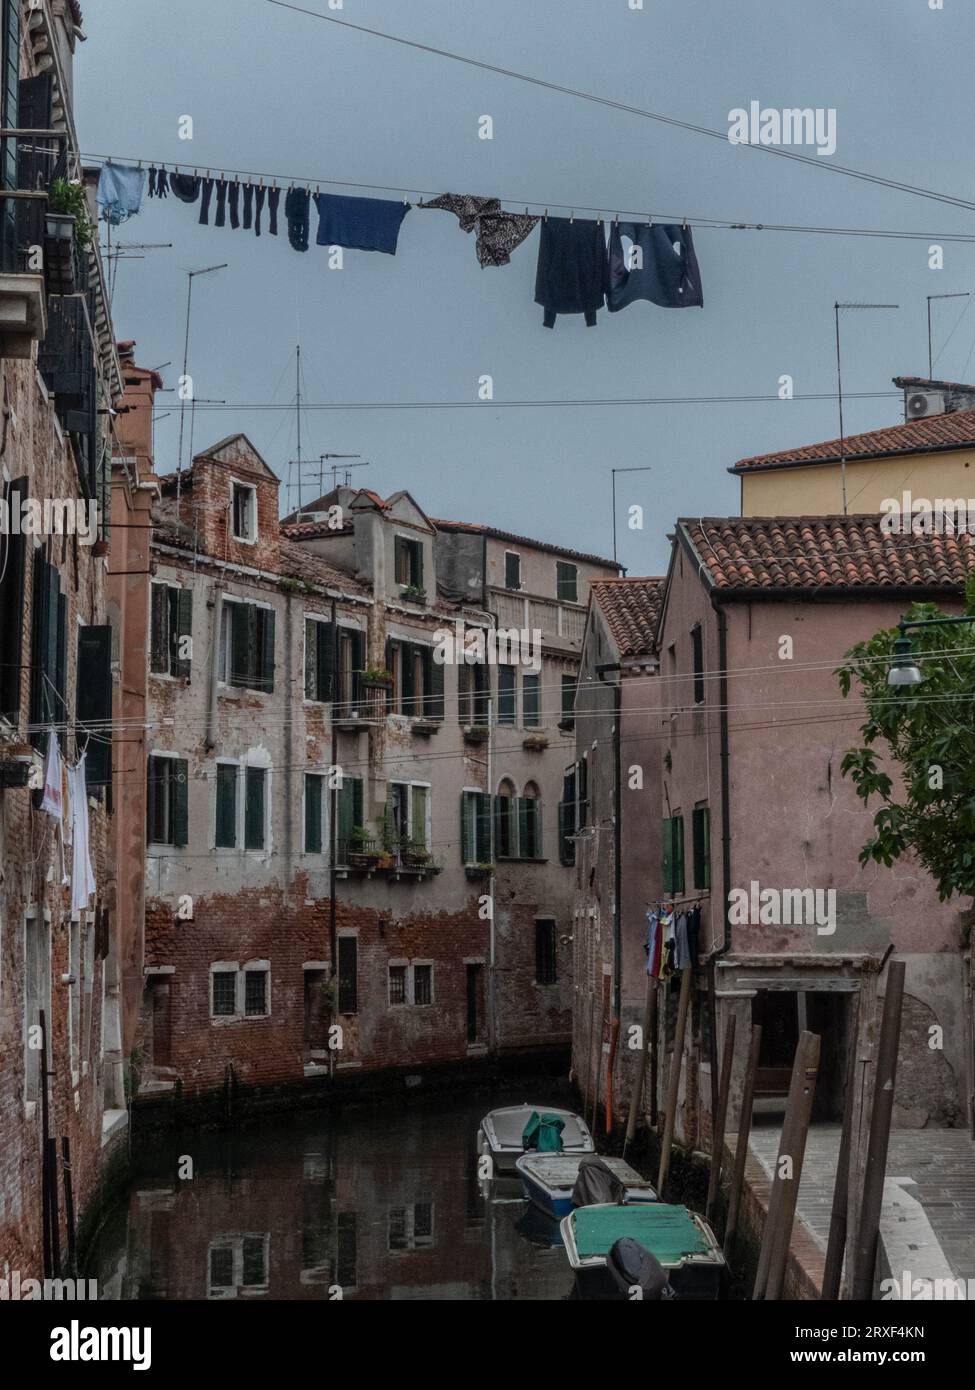 UN tranquillo momento a Venezia: Case veneziane che si affacciano su un pittoresco canale, con i panni stesi ad asciugare. Stockfoto